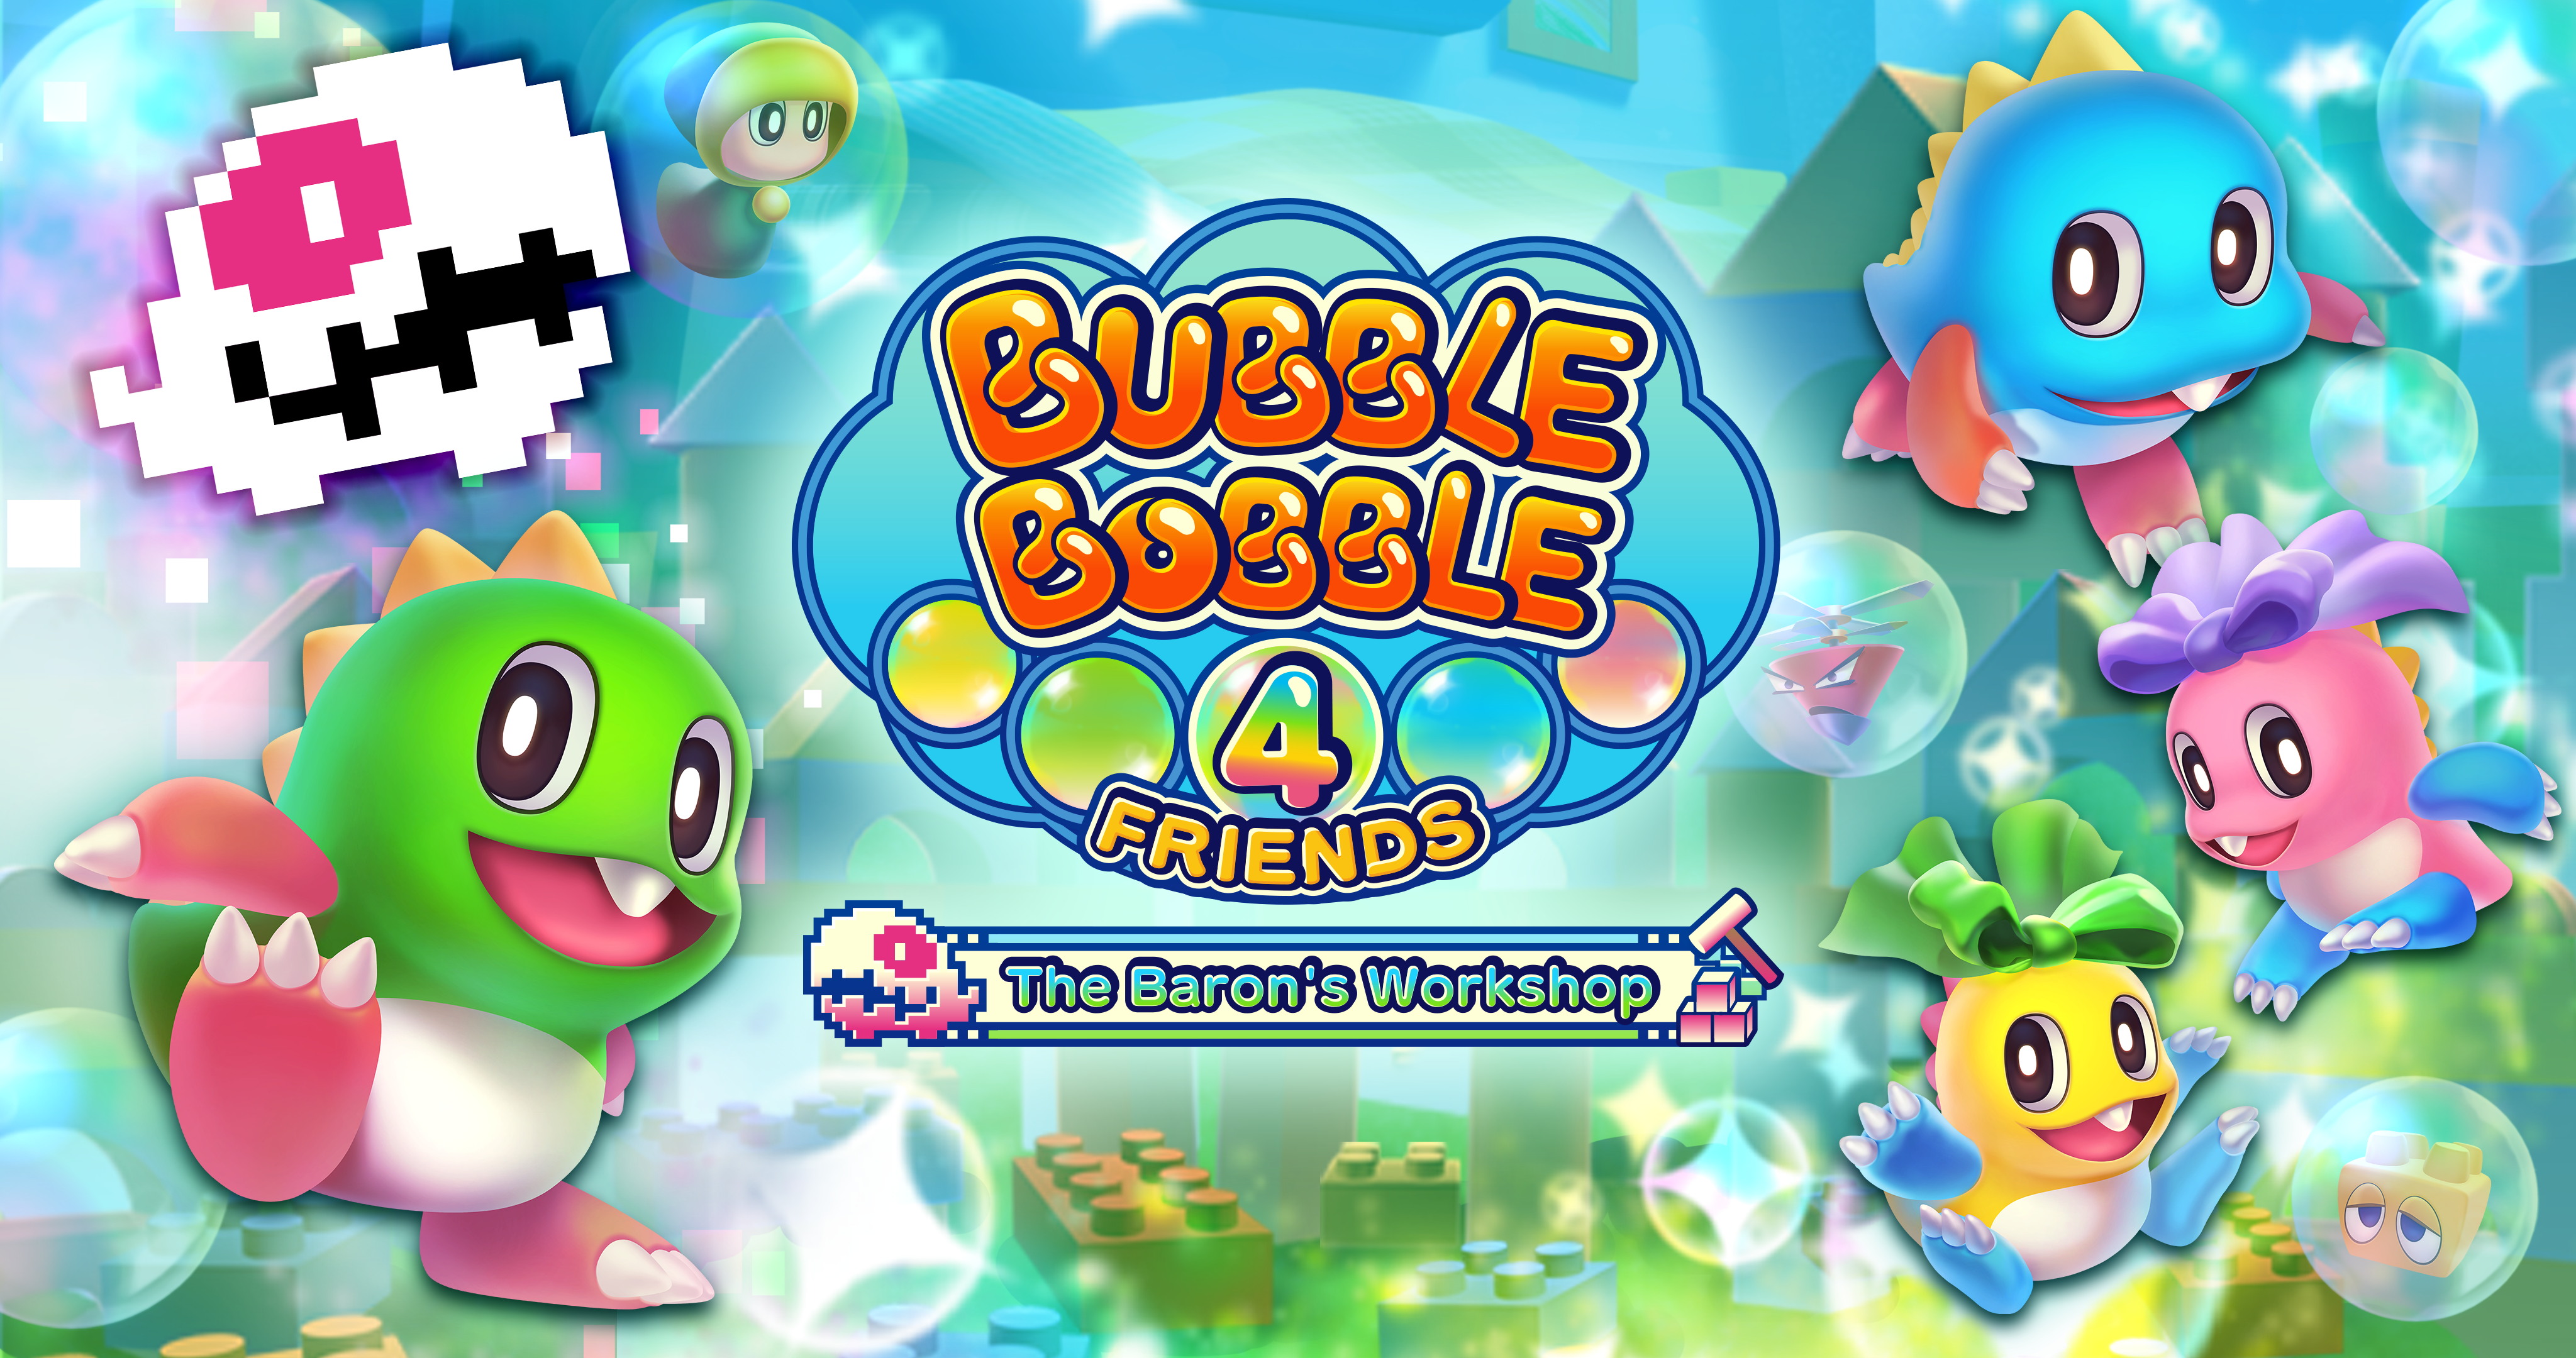 Bubble Bobble 4 Friends: The Baron’s Workshop auf Steam veröffentlicht